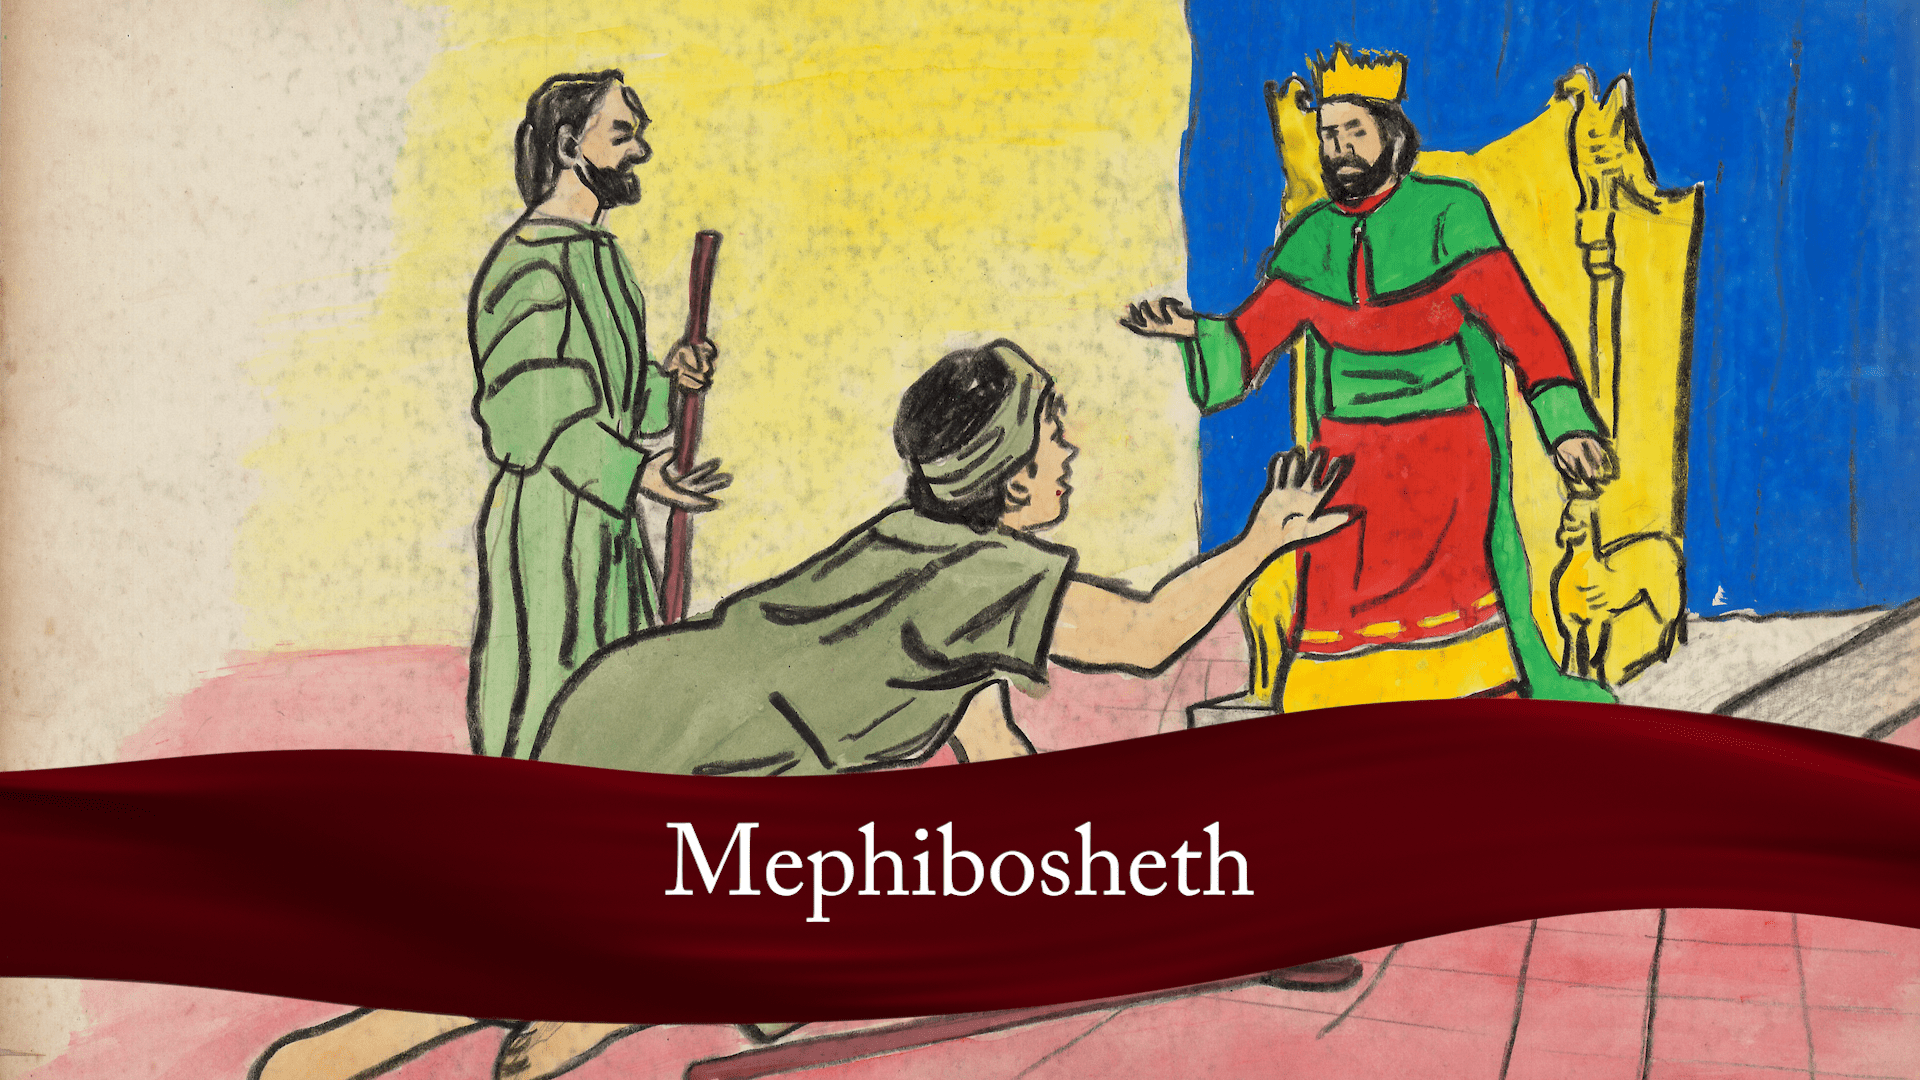 Mephibosheth